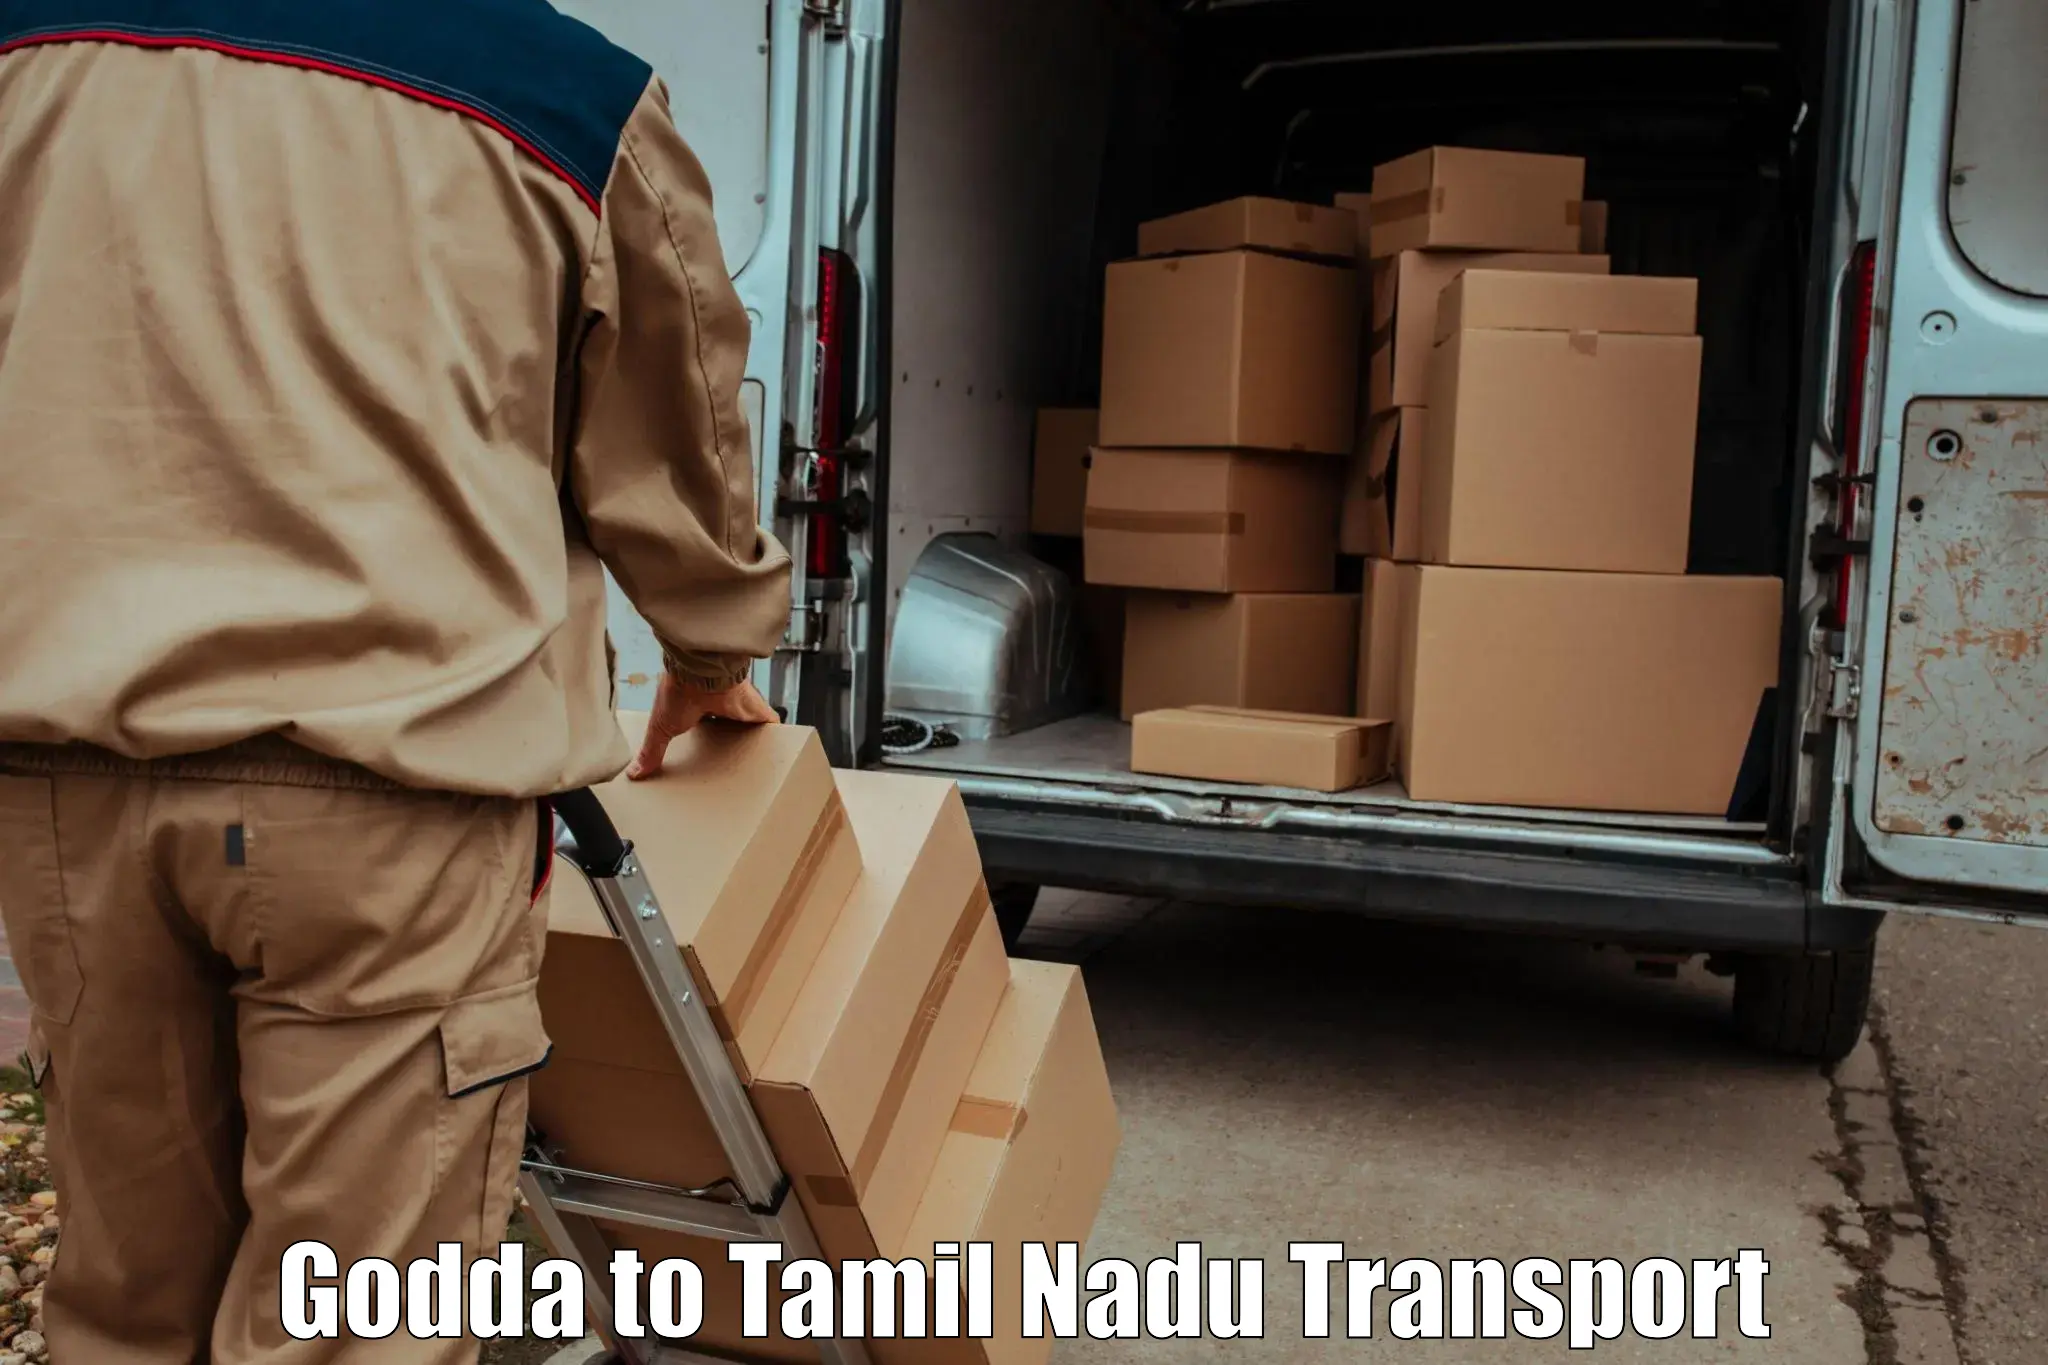 Inland transportation services Godda to Sathyamangalam